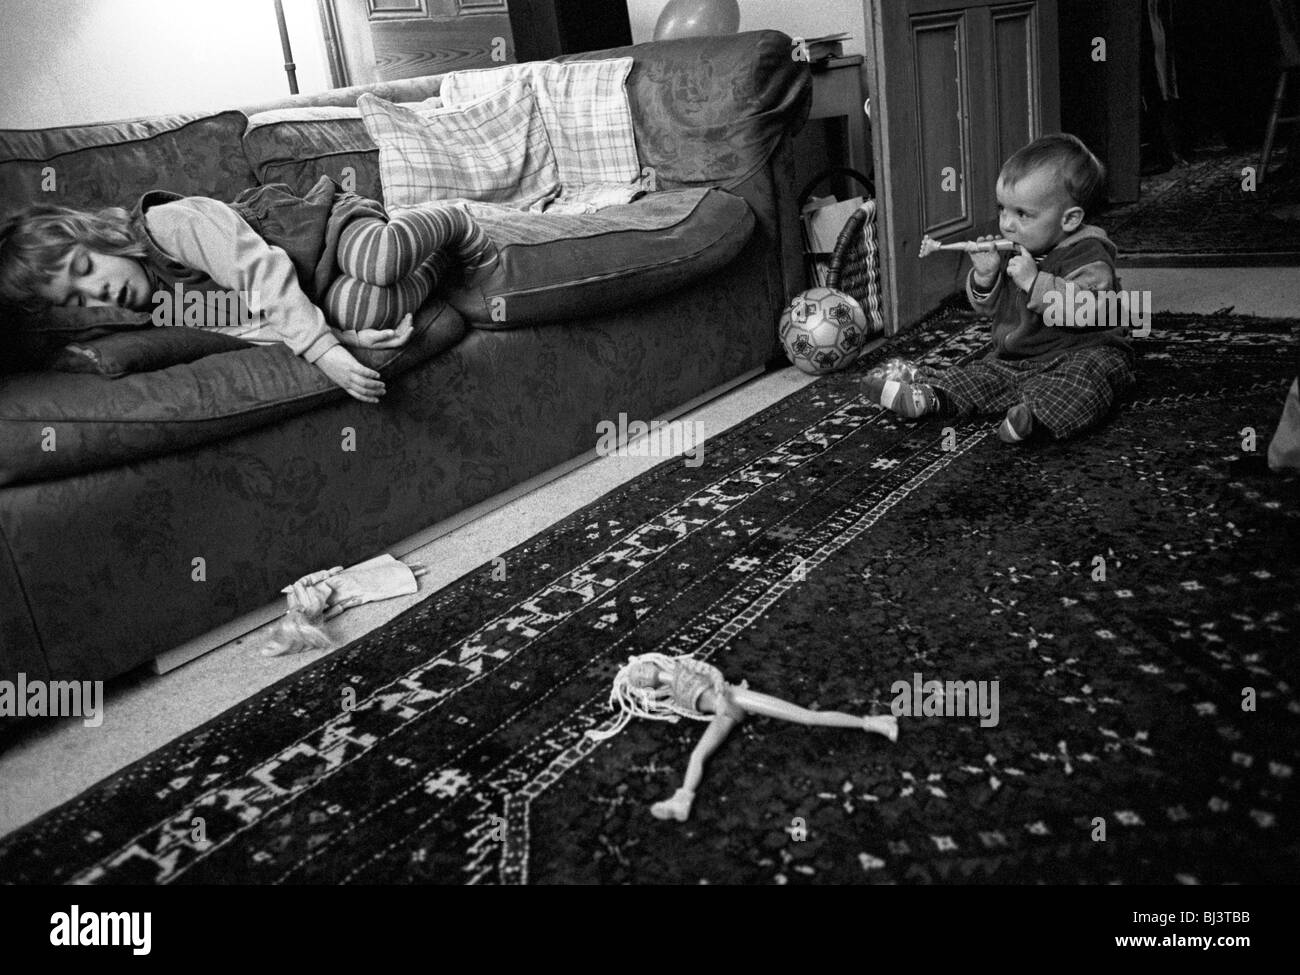 Como su hermano juega, a tres años y medio de edad media niña toma una siesta en el sofá de su casa al sur de Londres. Foto de stock